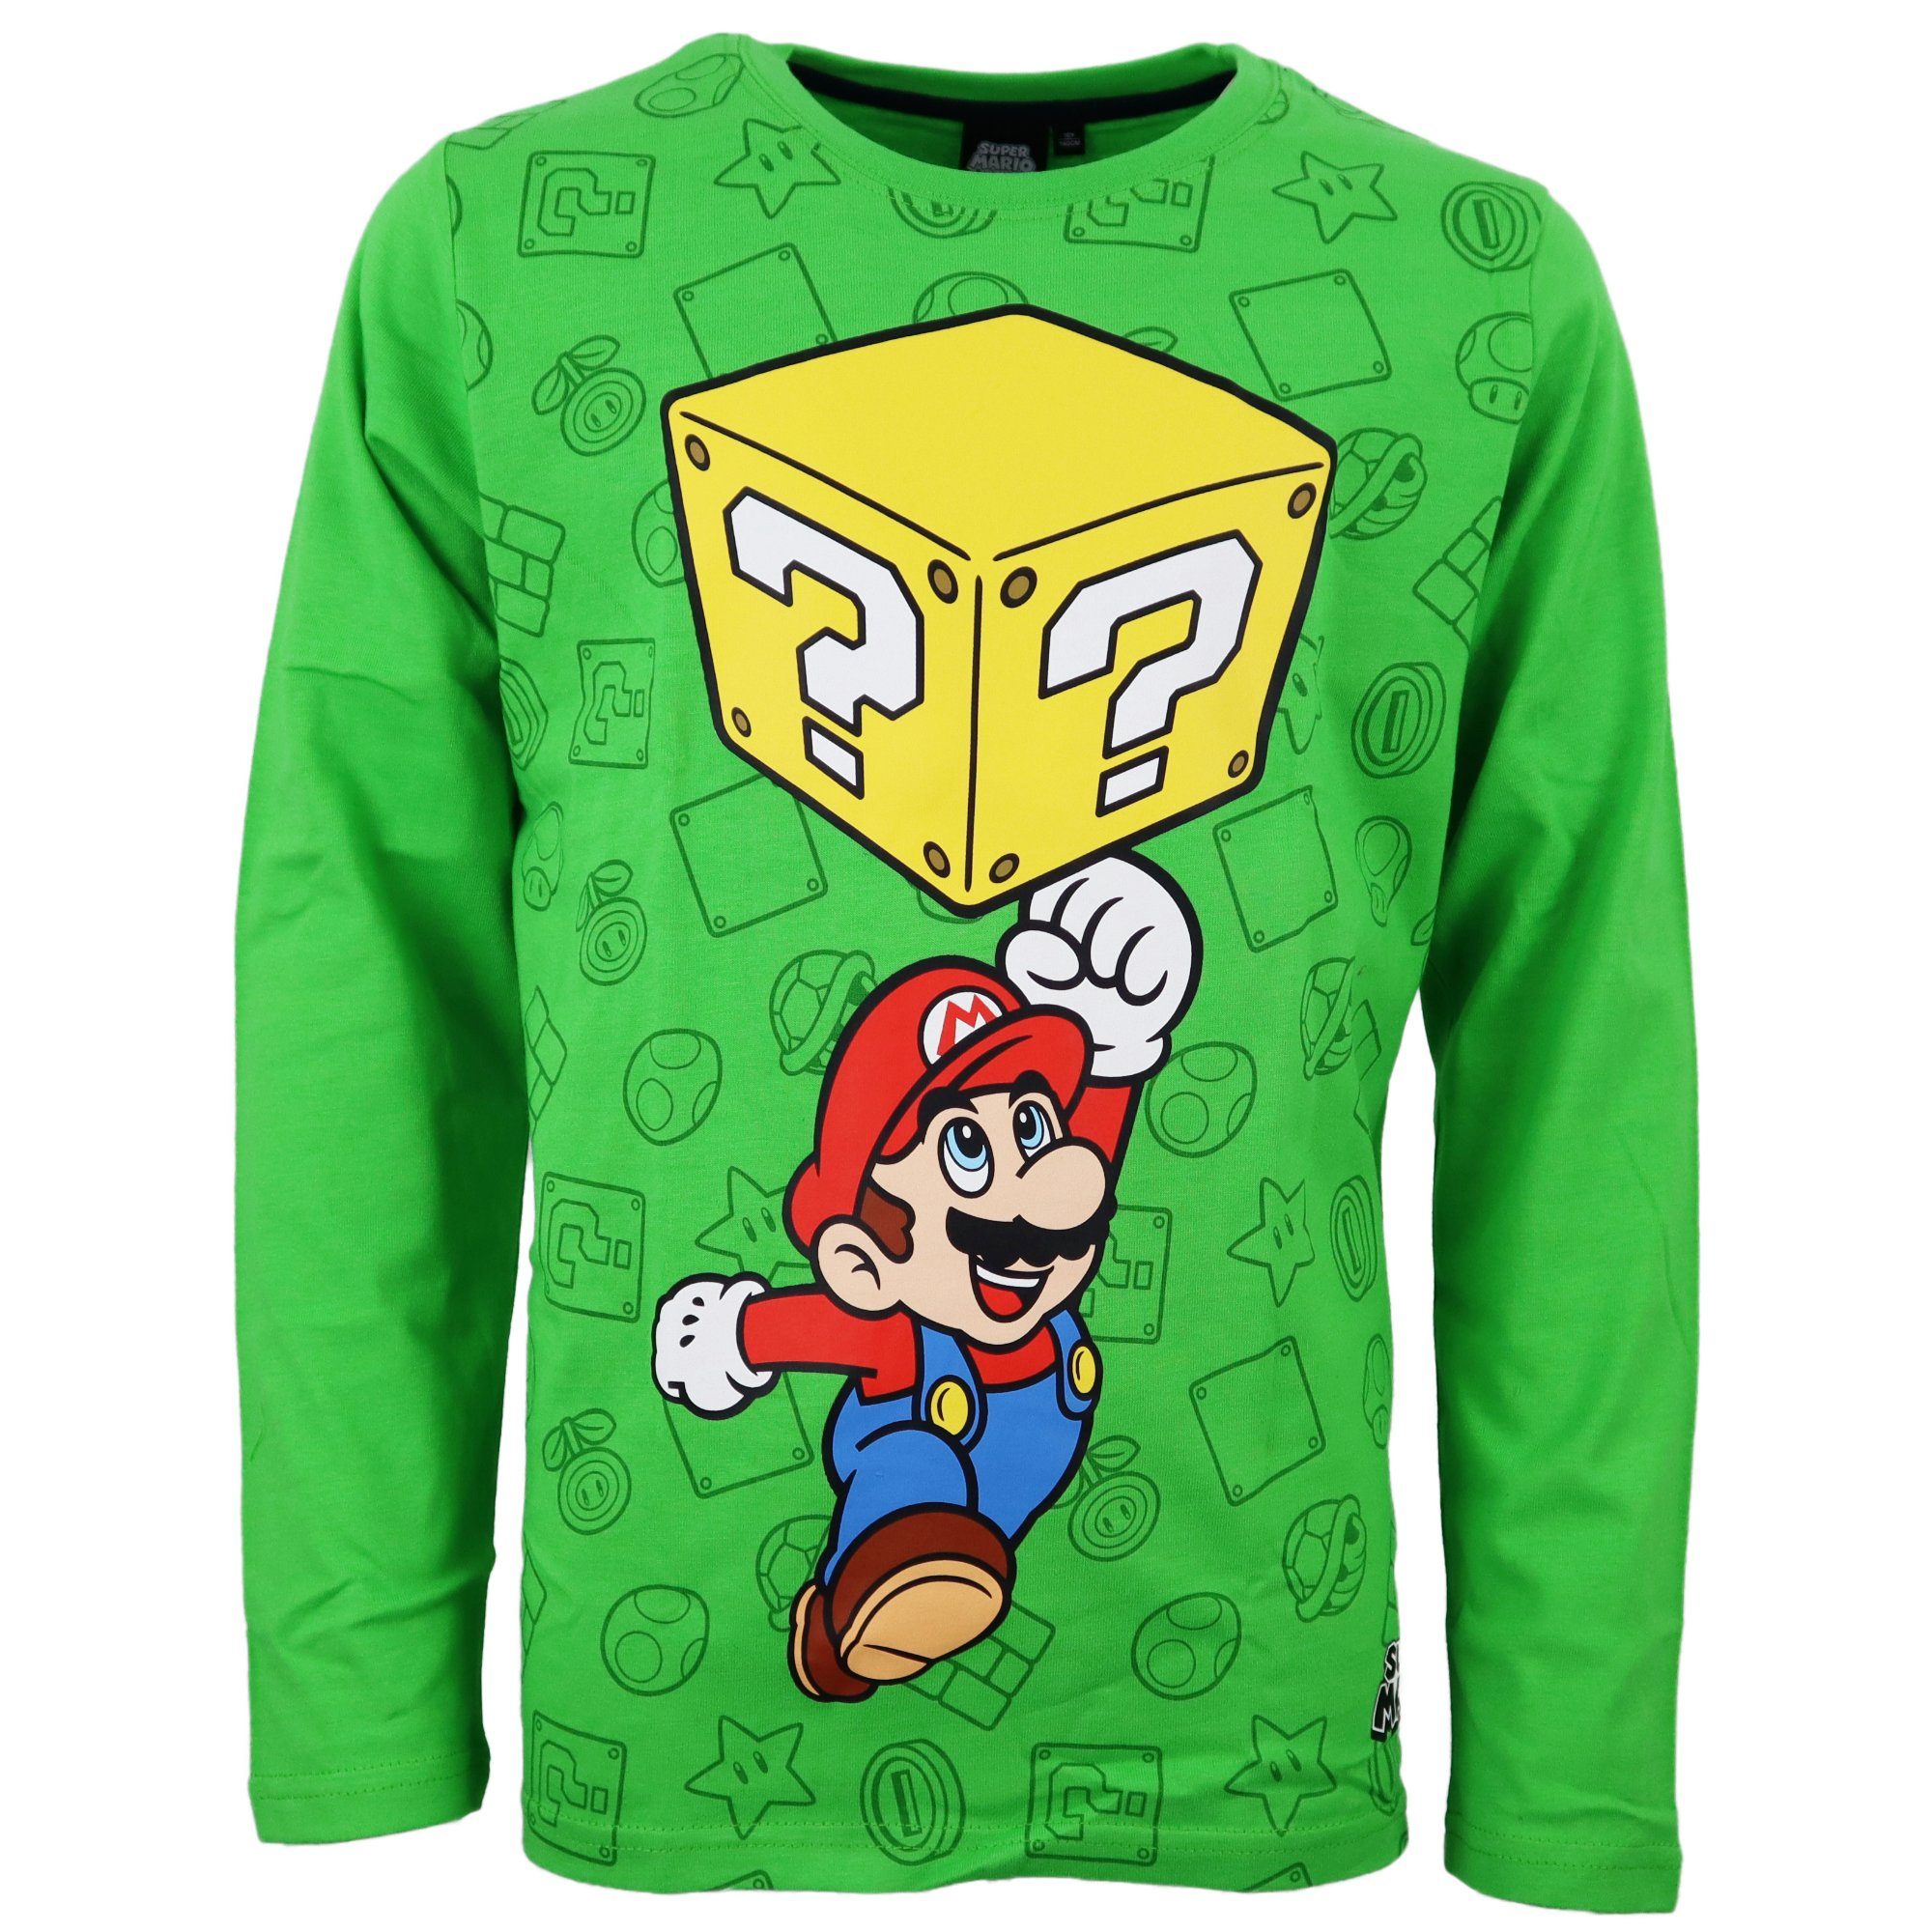 Super Mario Langarmshirt Kinder Shirt in Grün Gr. 104 bis 152, 100%  Baumwolle